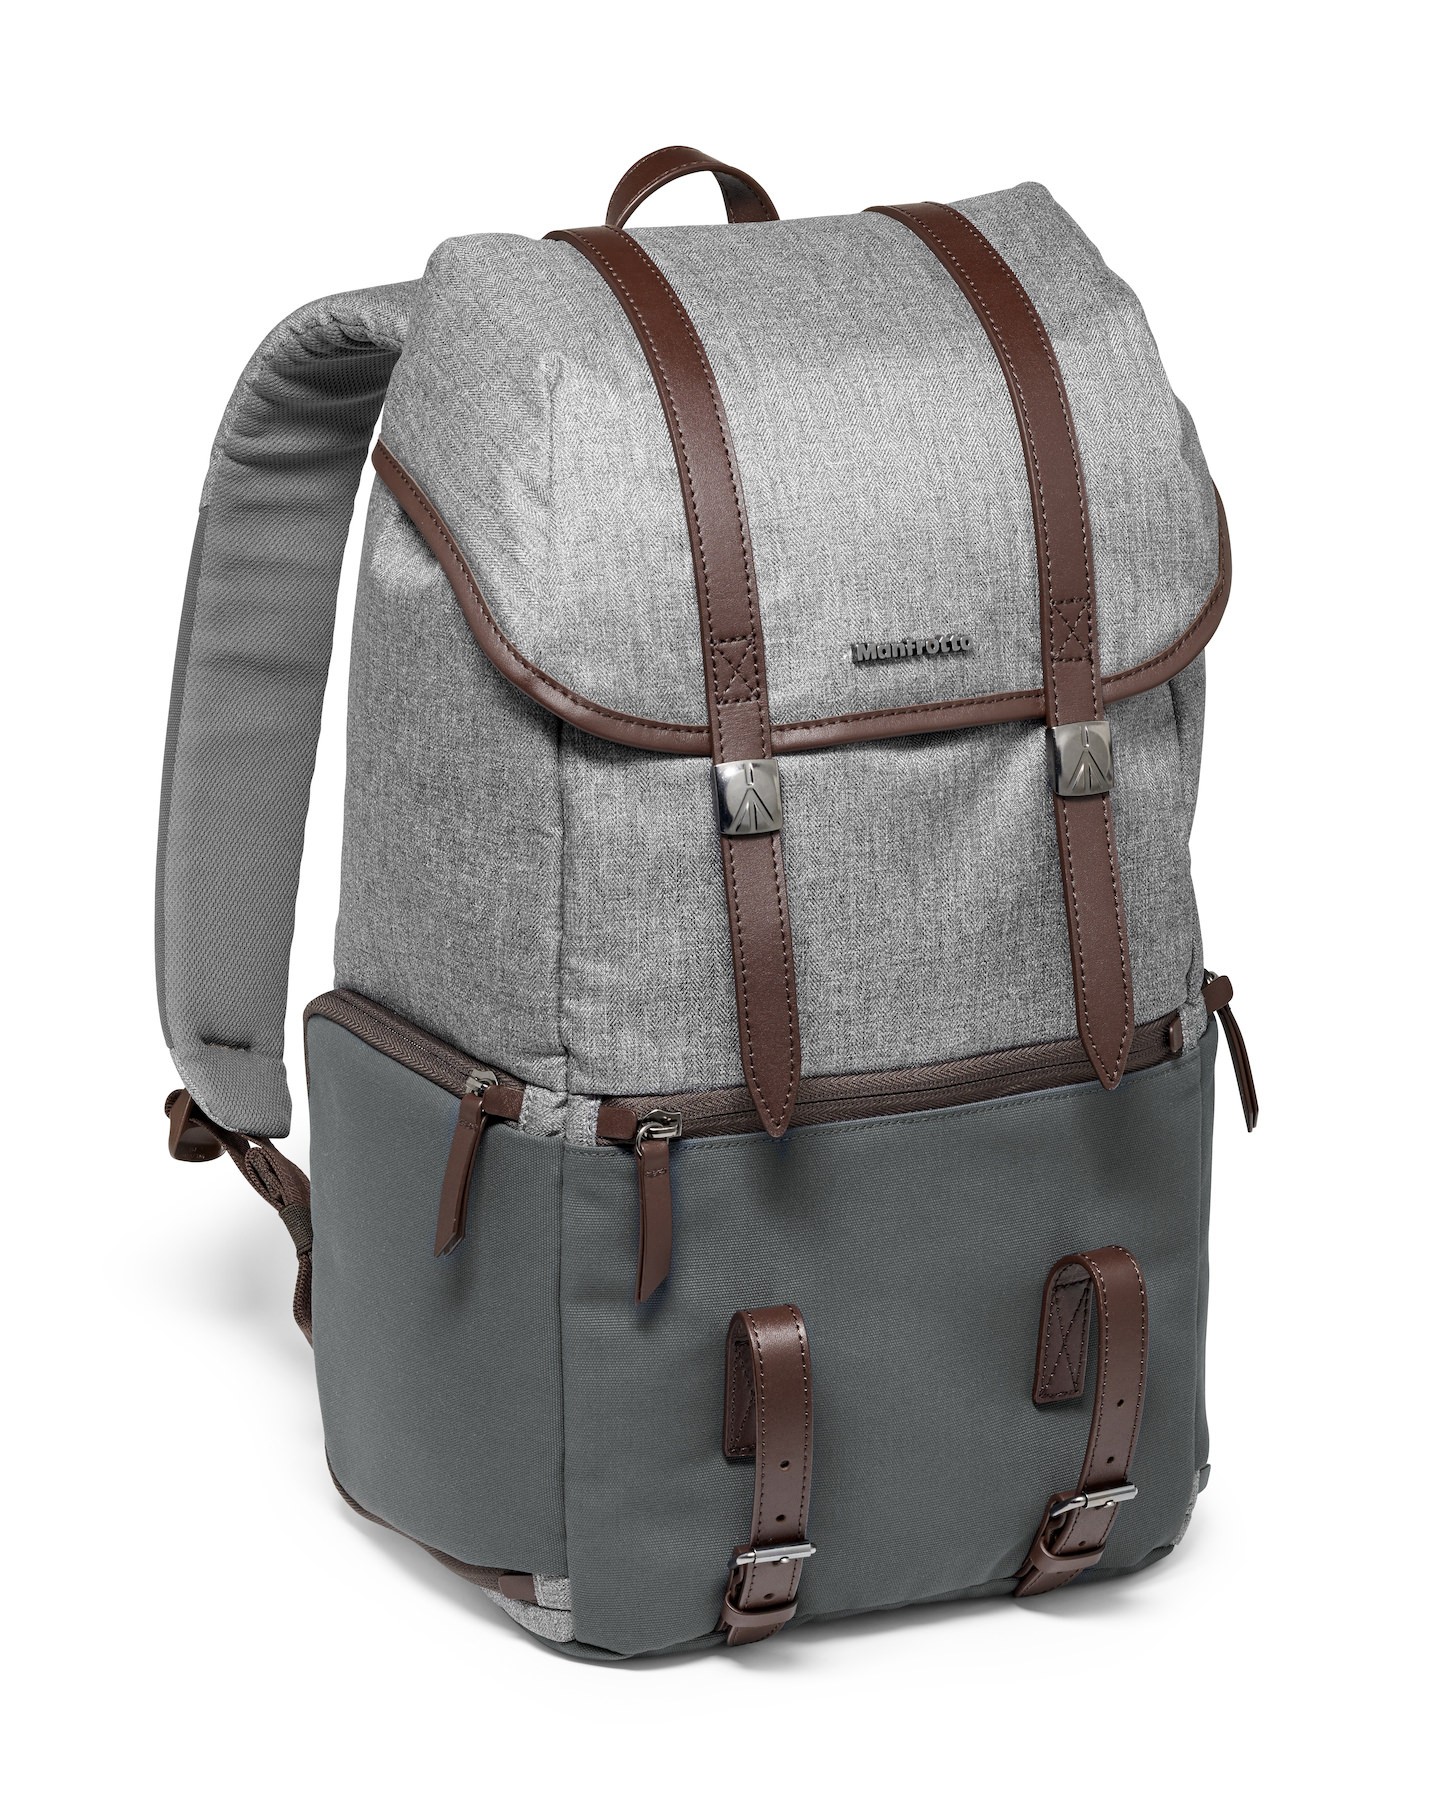 Windsor camera and laptop backpack for DSLR